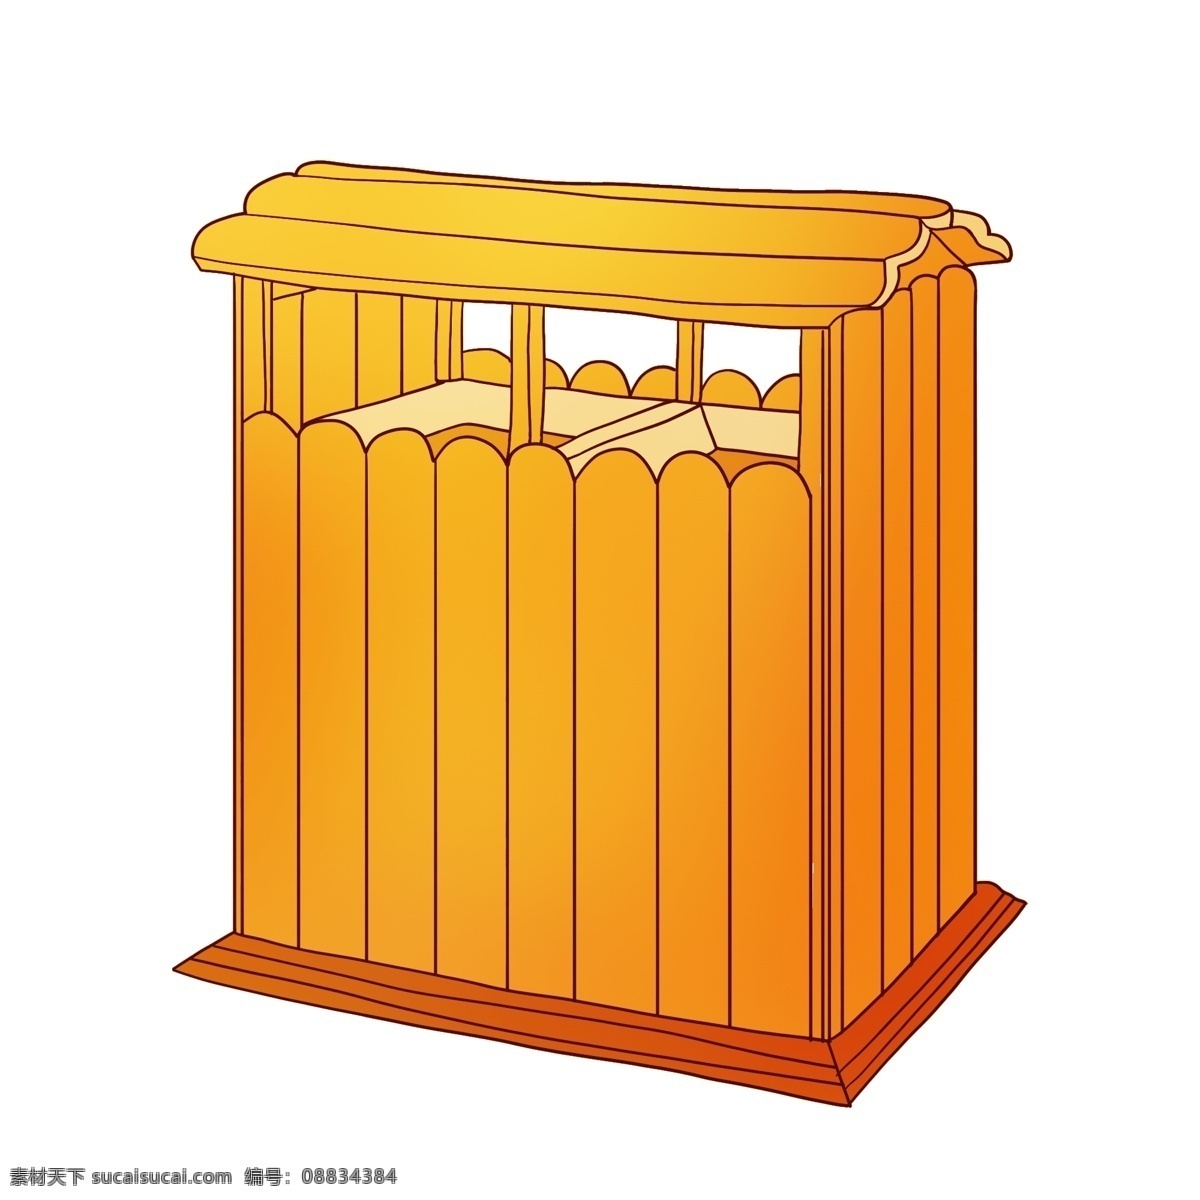 橘黄色 环保 垃圾桶 插画 收纳垃圾 橘黄色垃圾桶 手绘垃圾桶 木质垃圾桶 条纹垃圾桶